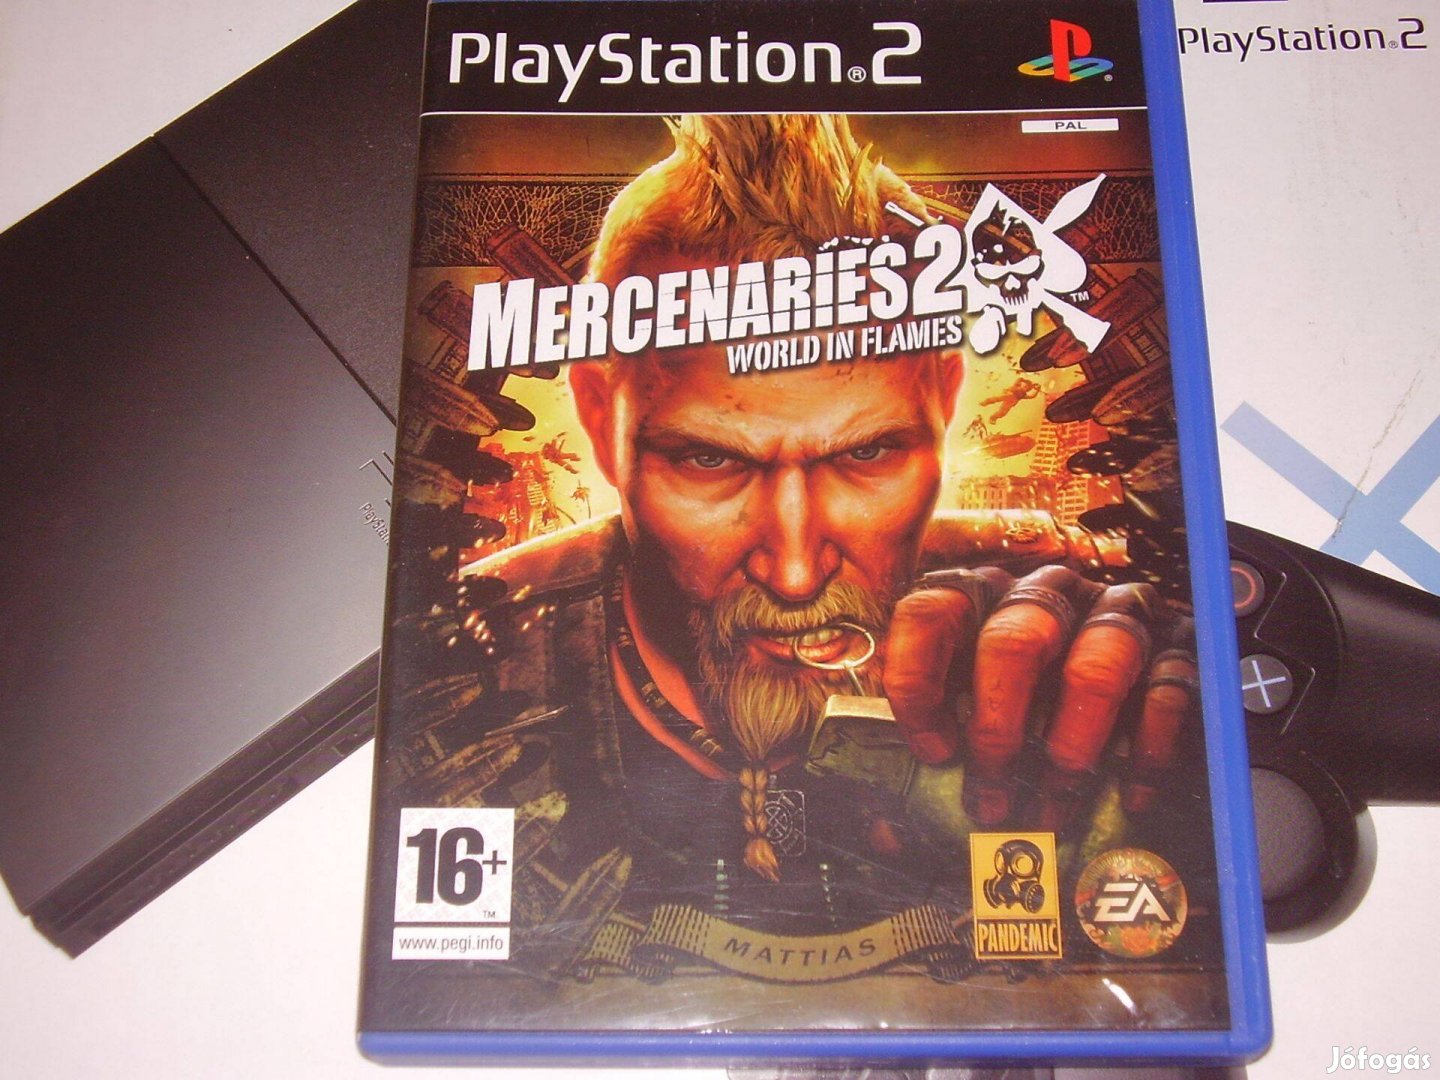 Mercenaries 2 Playstation 2 eredeti lemez eladó